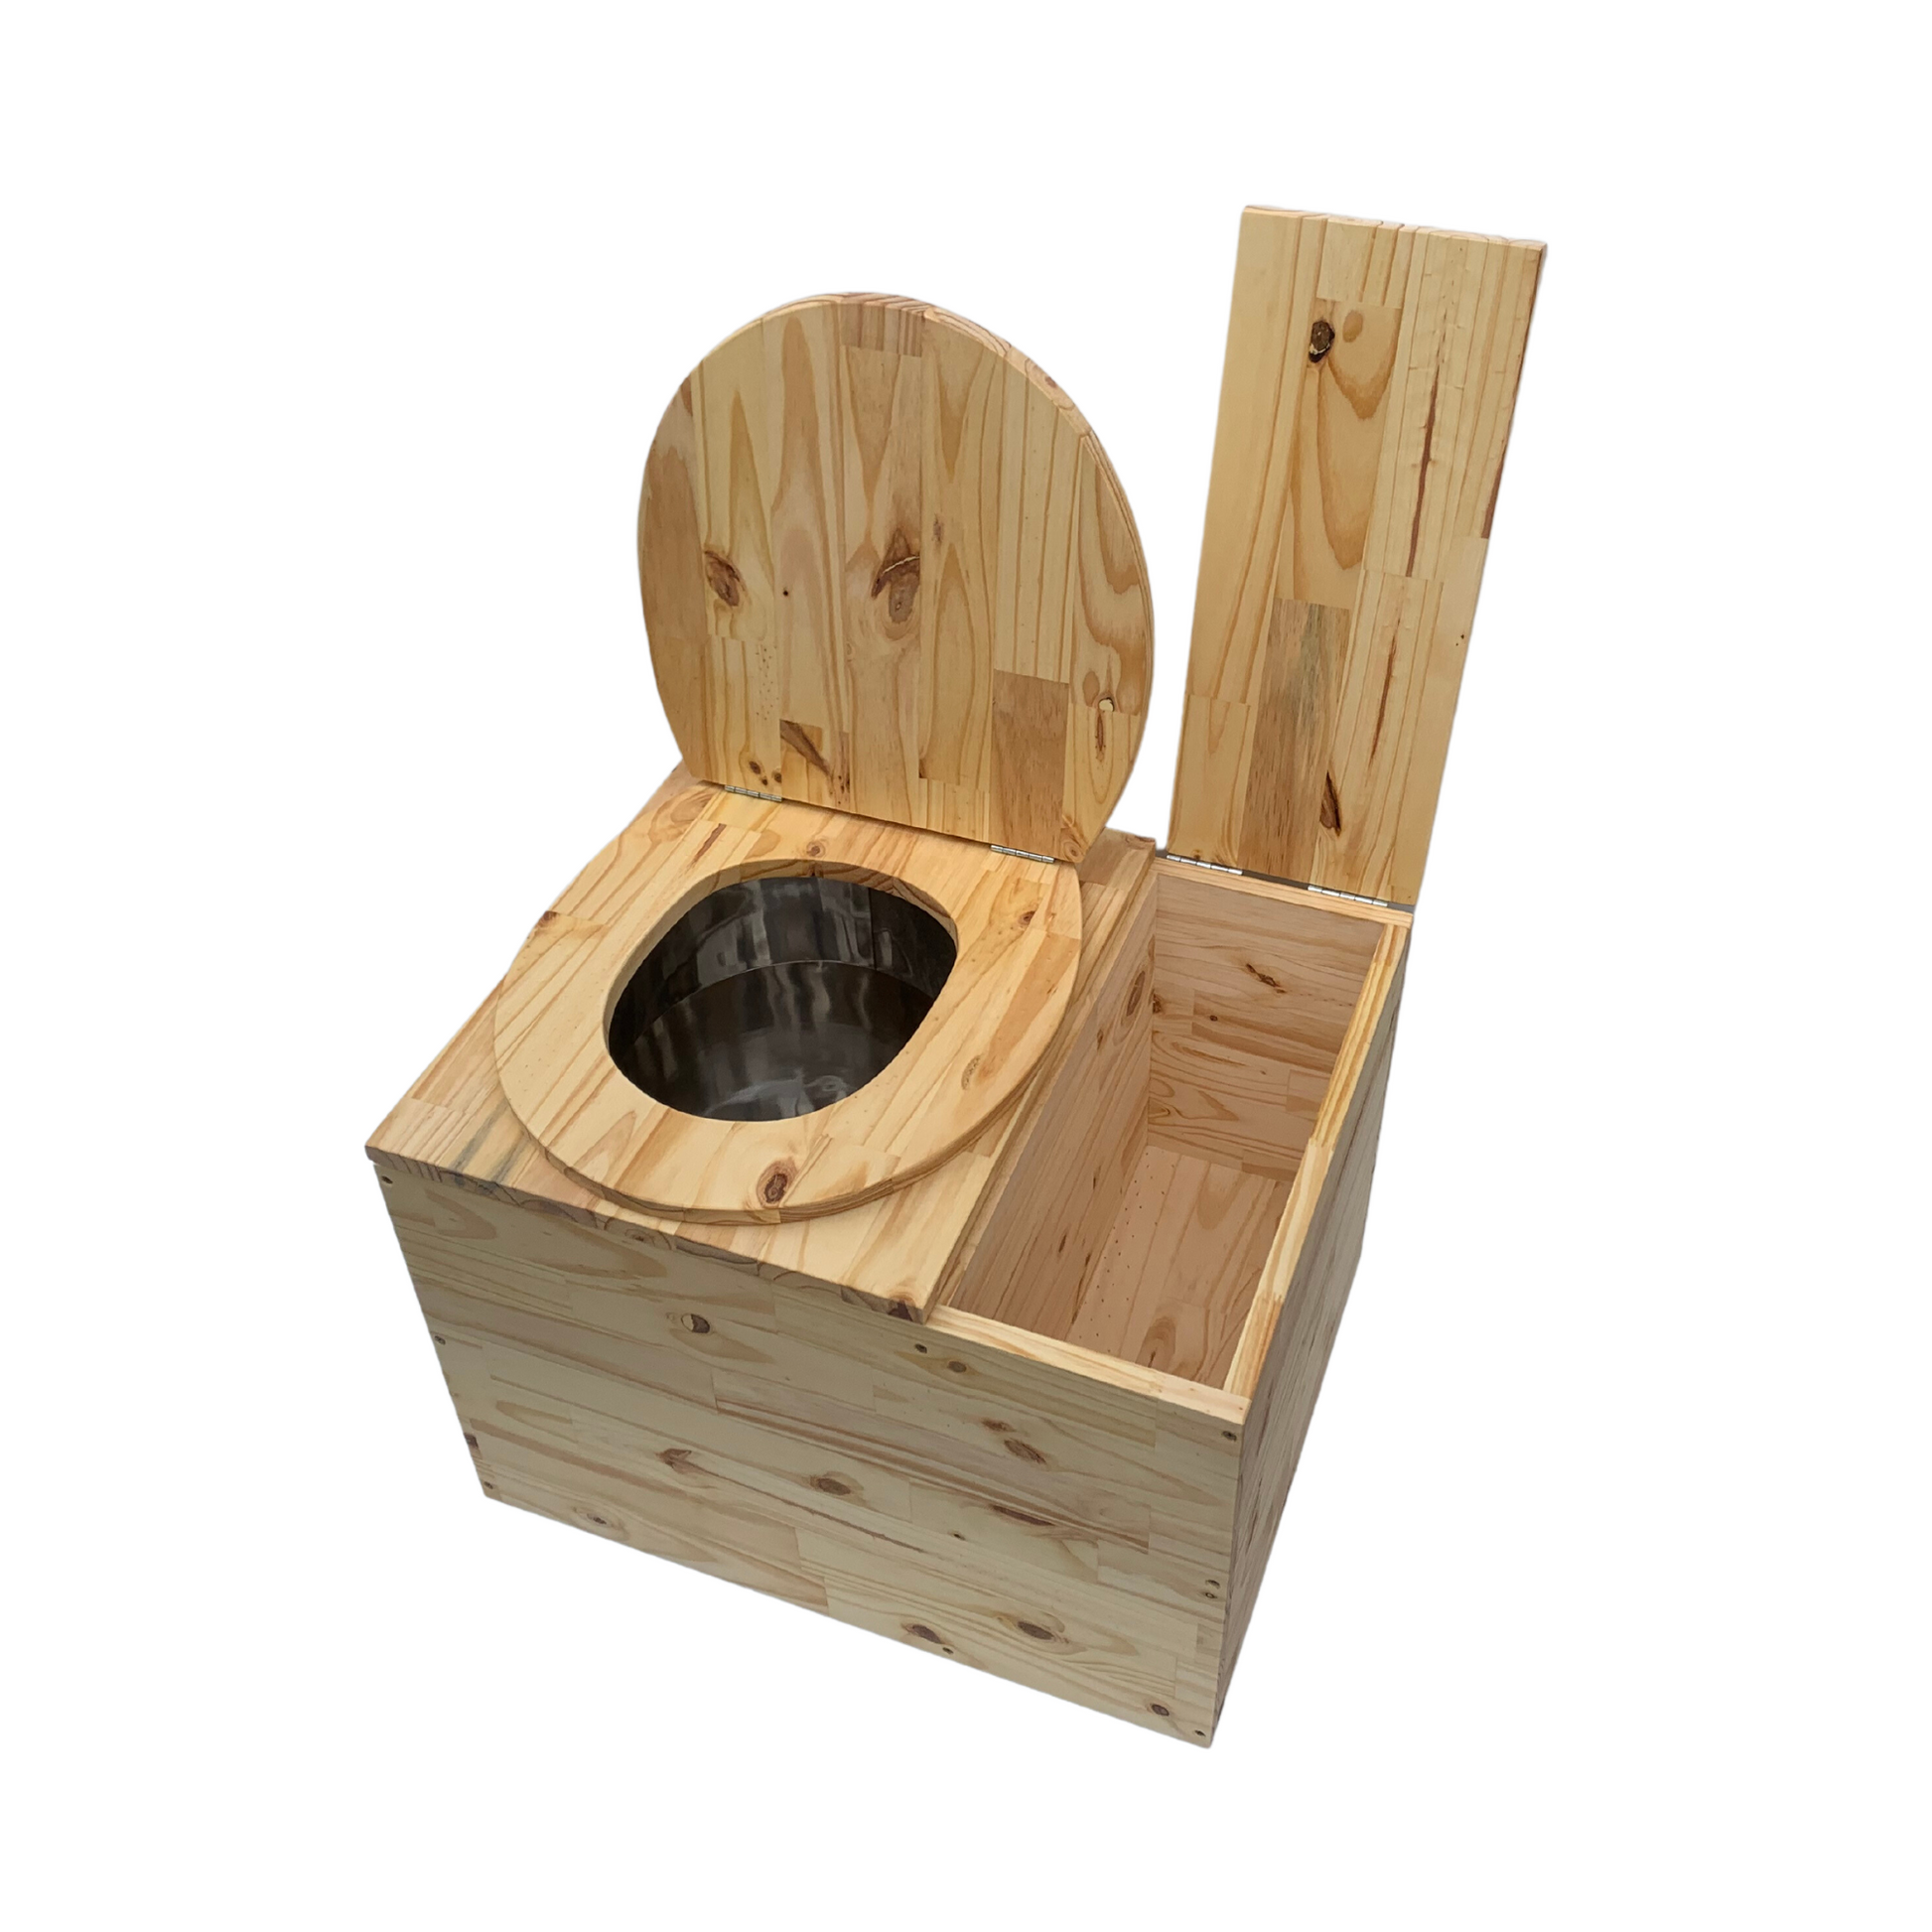 Toilette sèche en bois massif avec compartiment copeaux intégré